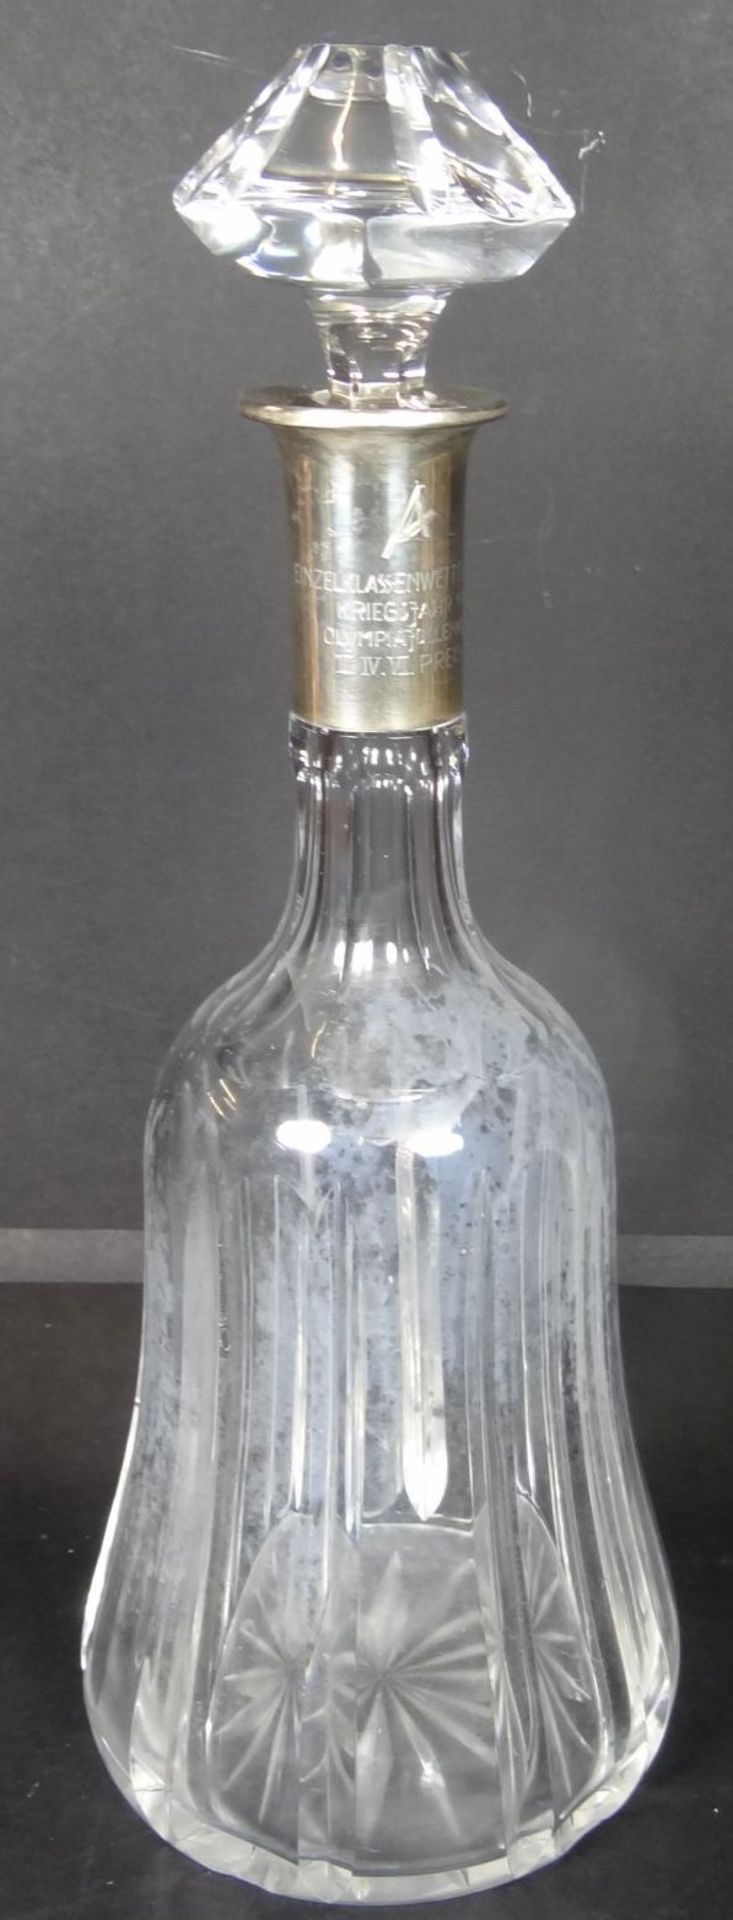 Kristallkaraffe mit Silberhals, Gravur, Segelpreis 1941, H-32 cm